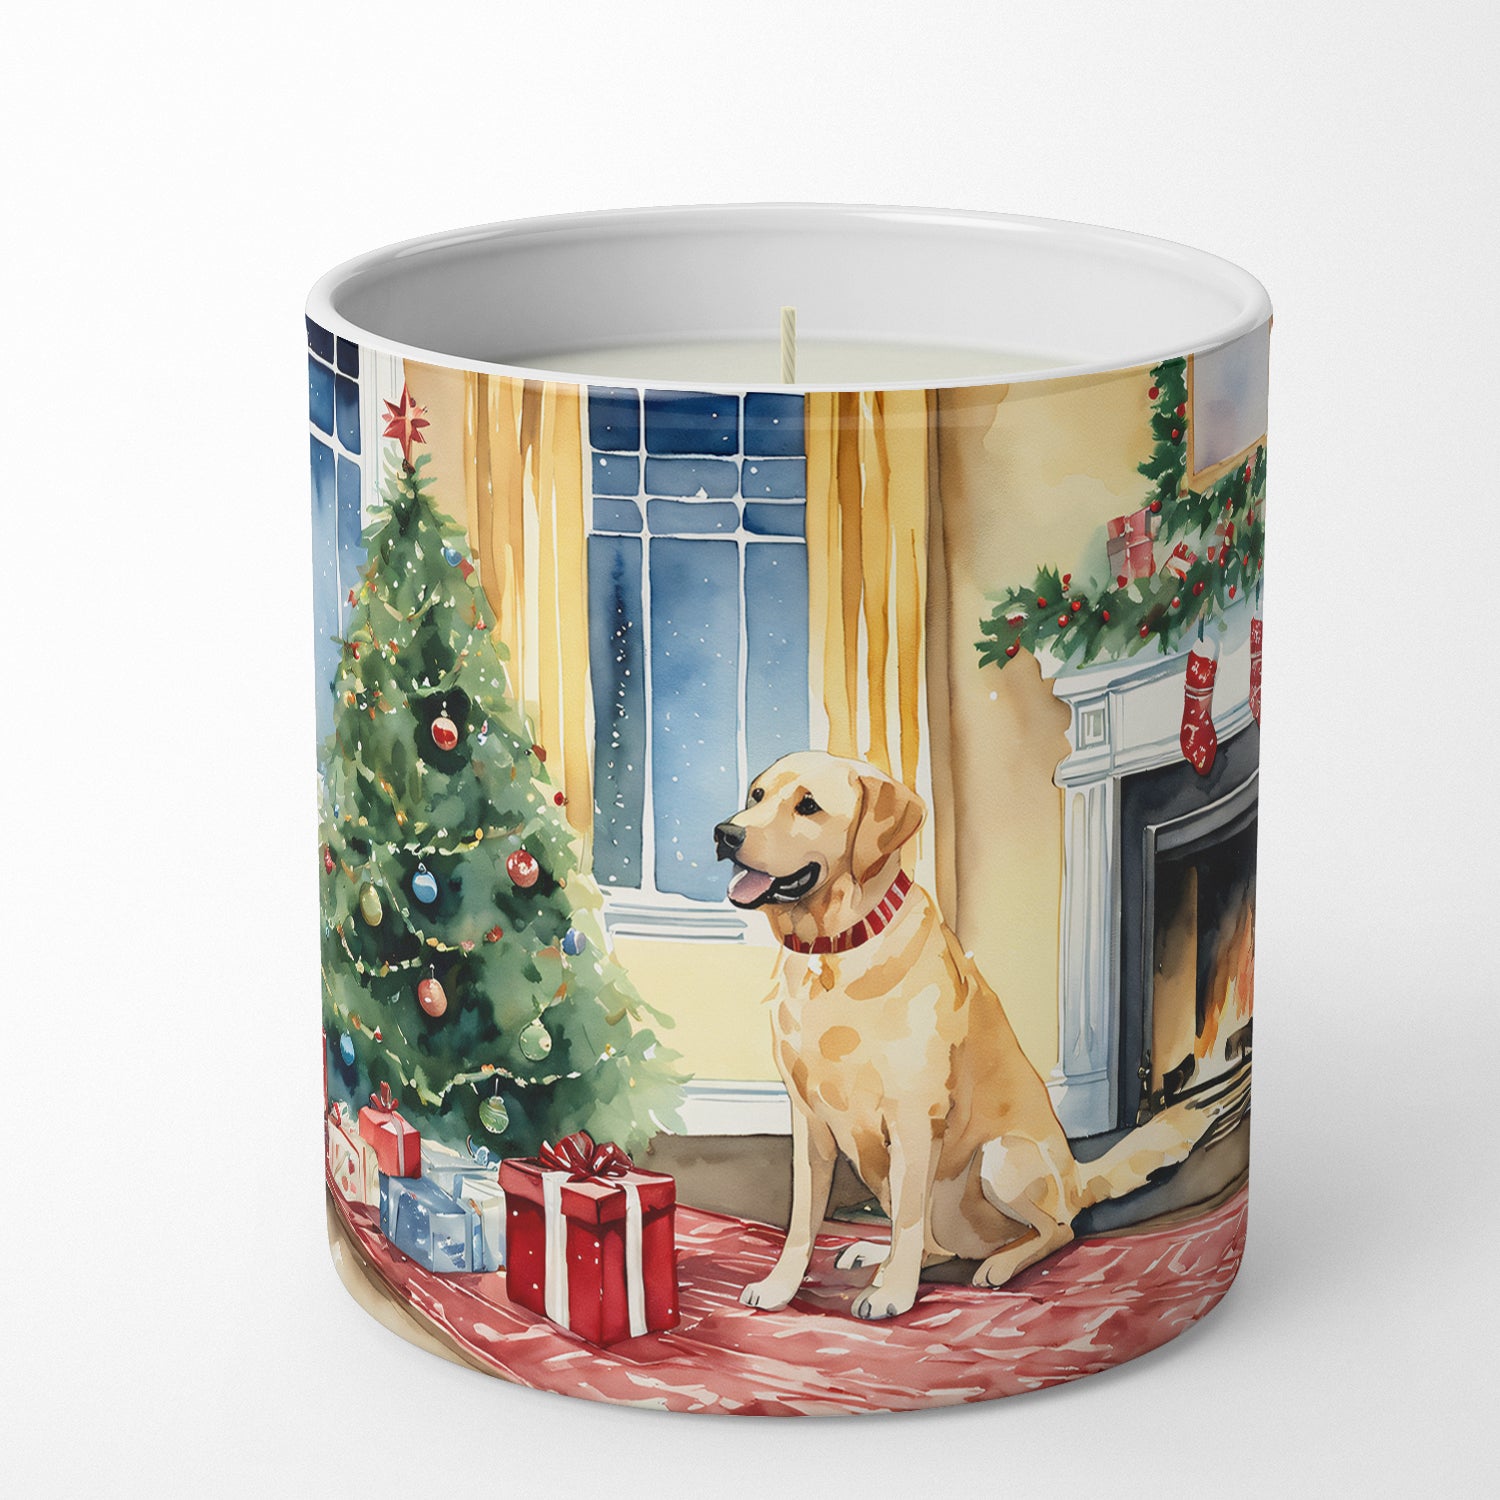 Buy this Labrador Retriever Cozy Christmas Decorative Soy Candle